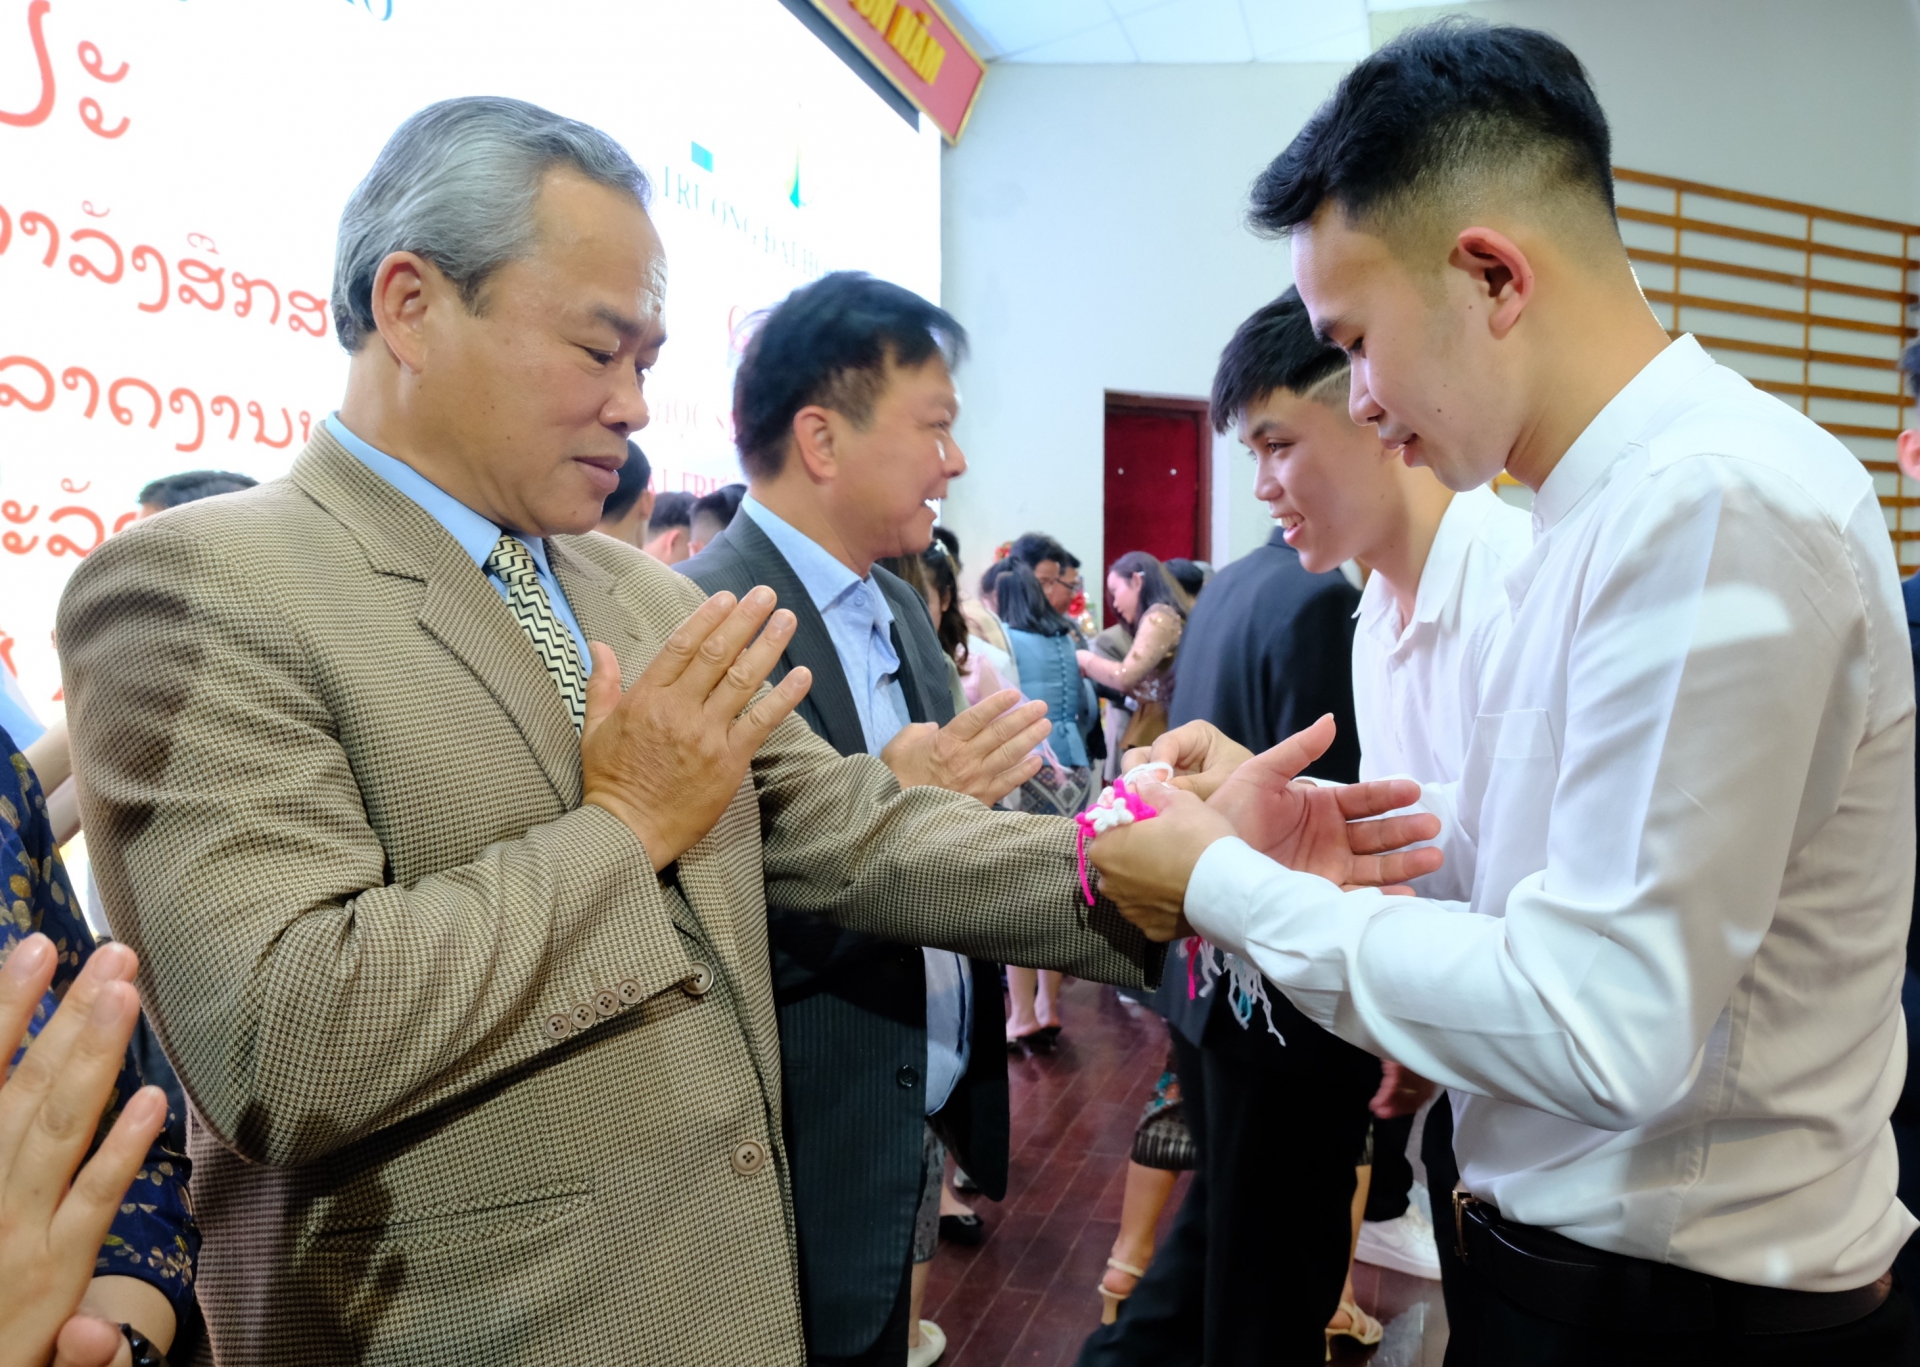 Lưu học sinh Lào thực hiện nghi thức buộc chỉ tay cùng lời chúc may mắn đến các đại biểu